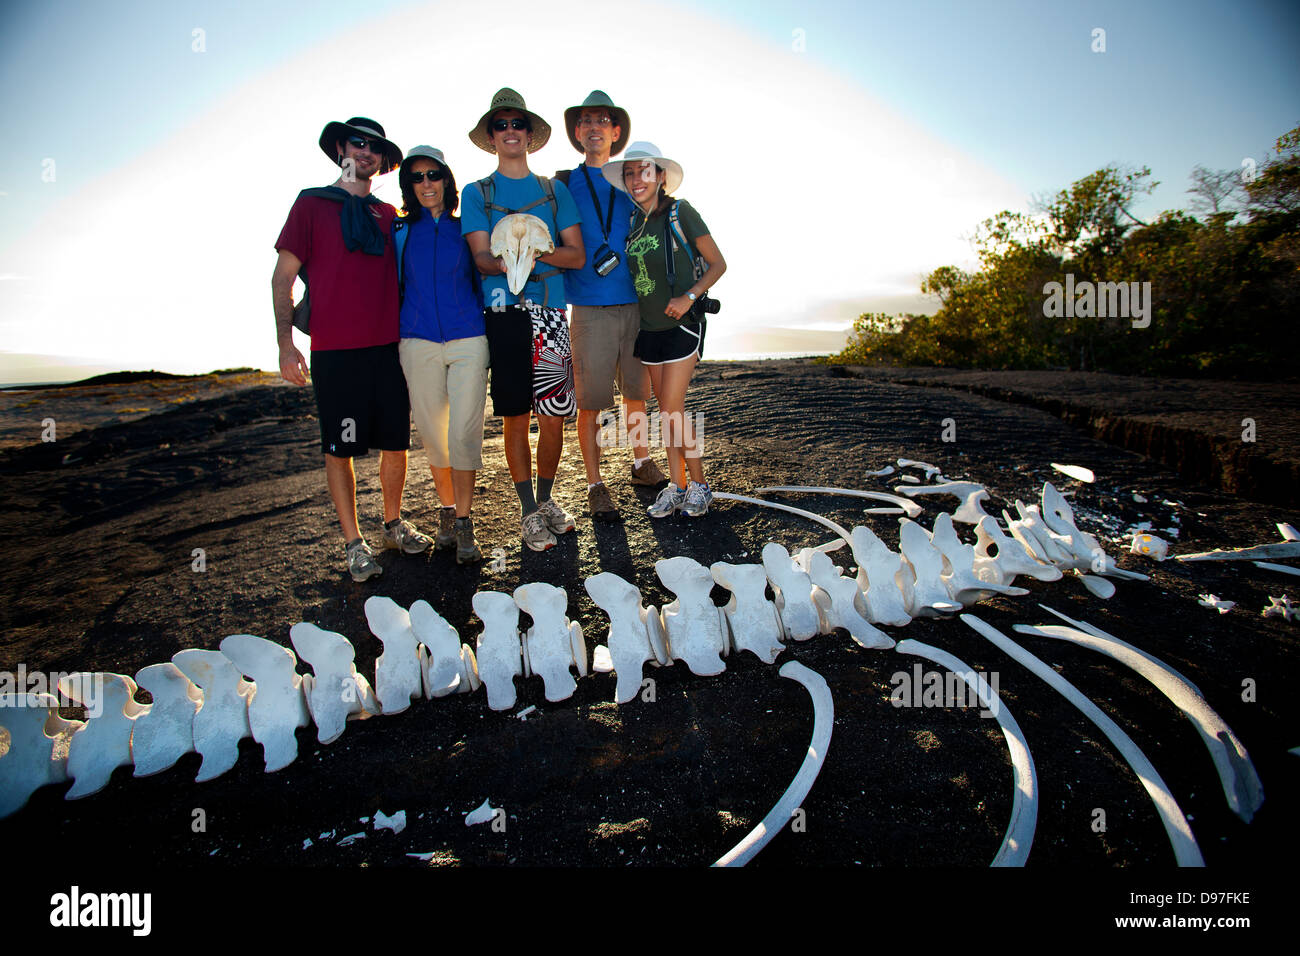 Les touristes d'être photographiés avec les os de baleine trouvés sur l'île de Fernandina, Espinozo Punta, Galapagos, Equateur Banque D'Images